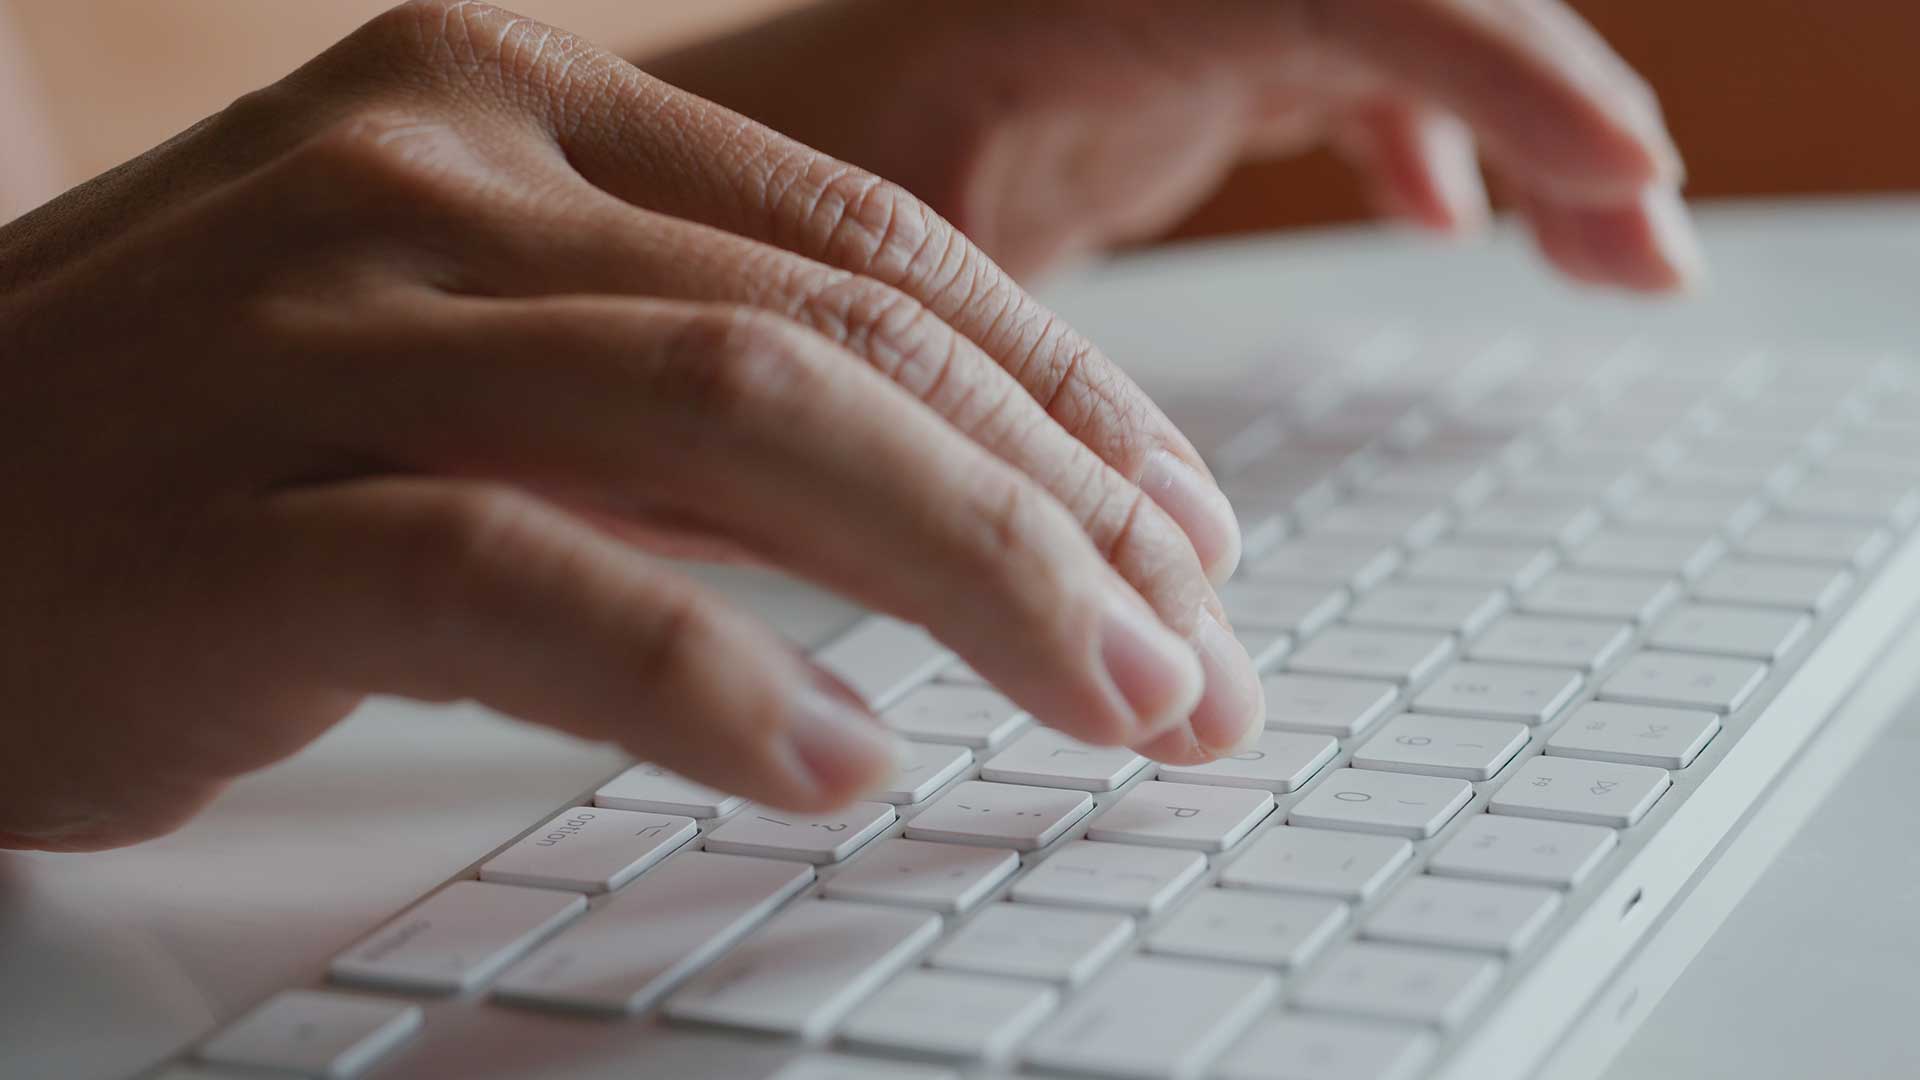 Blogging man using keyboard to